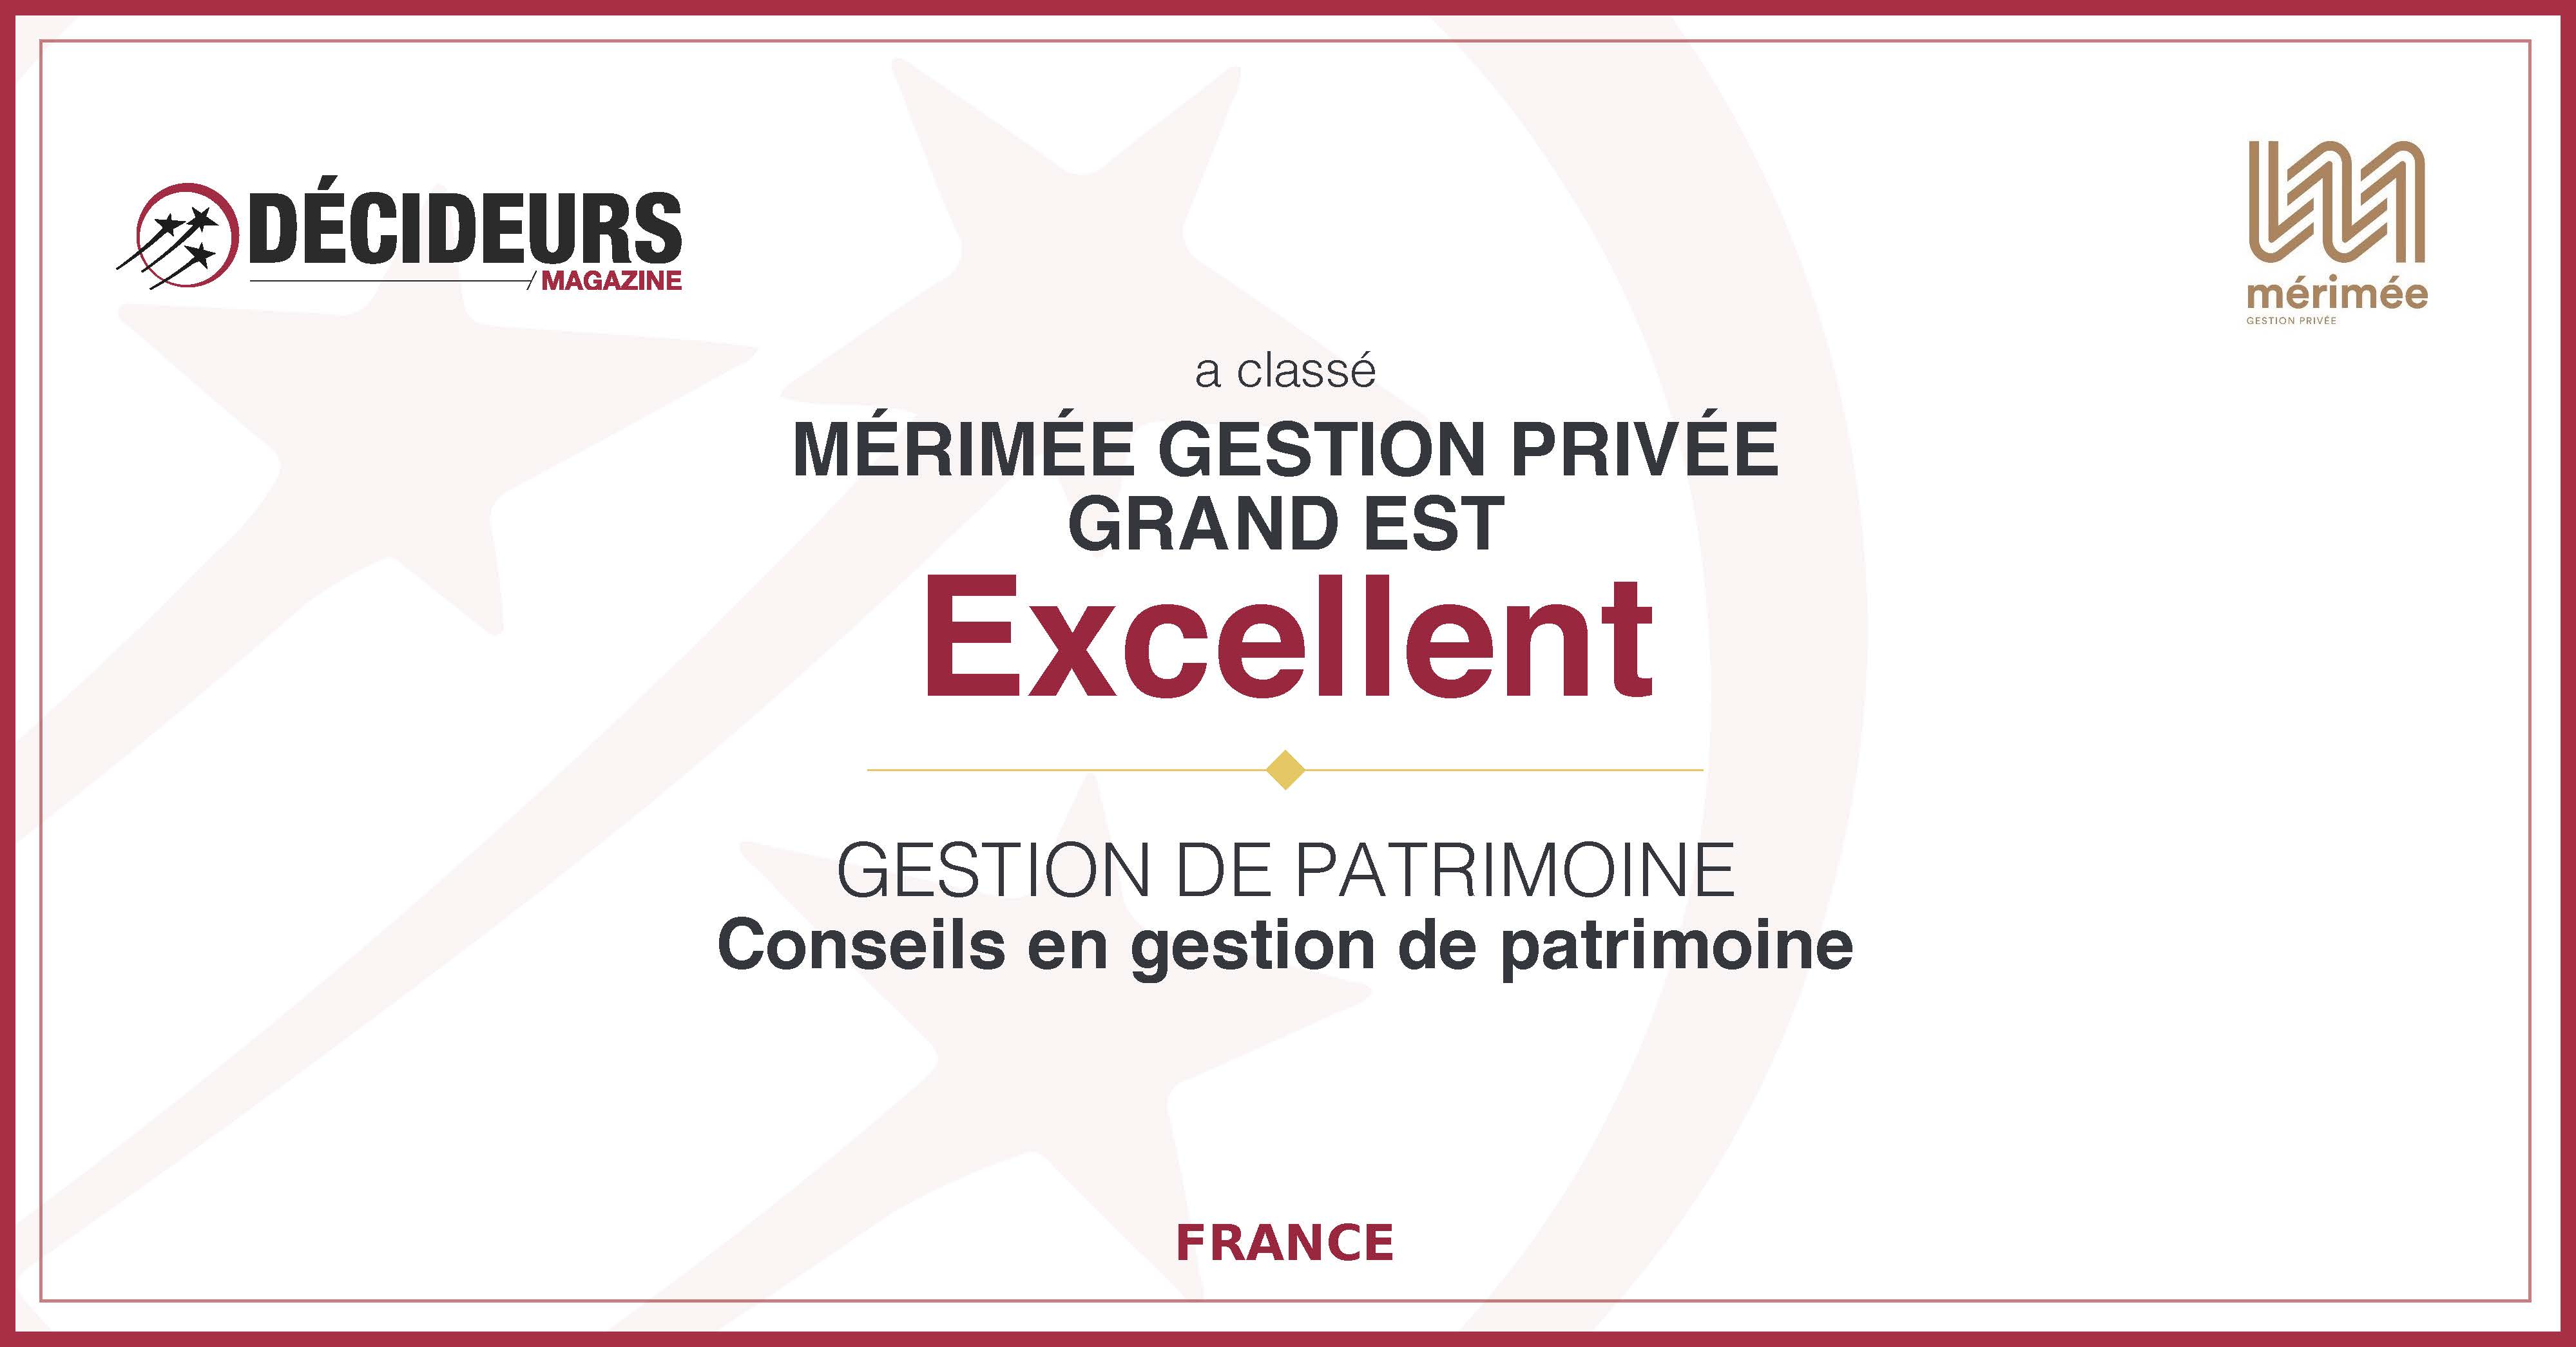 Mérimée Gestion Privée, expert en gestion de patrimoine a été primé par Décideurs Magazine comme pratique d'excellence.